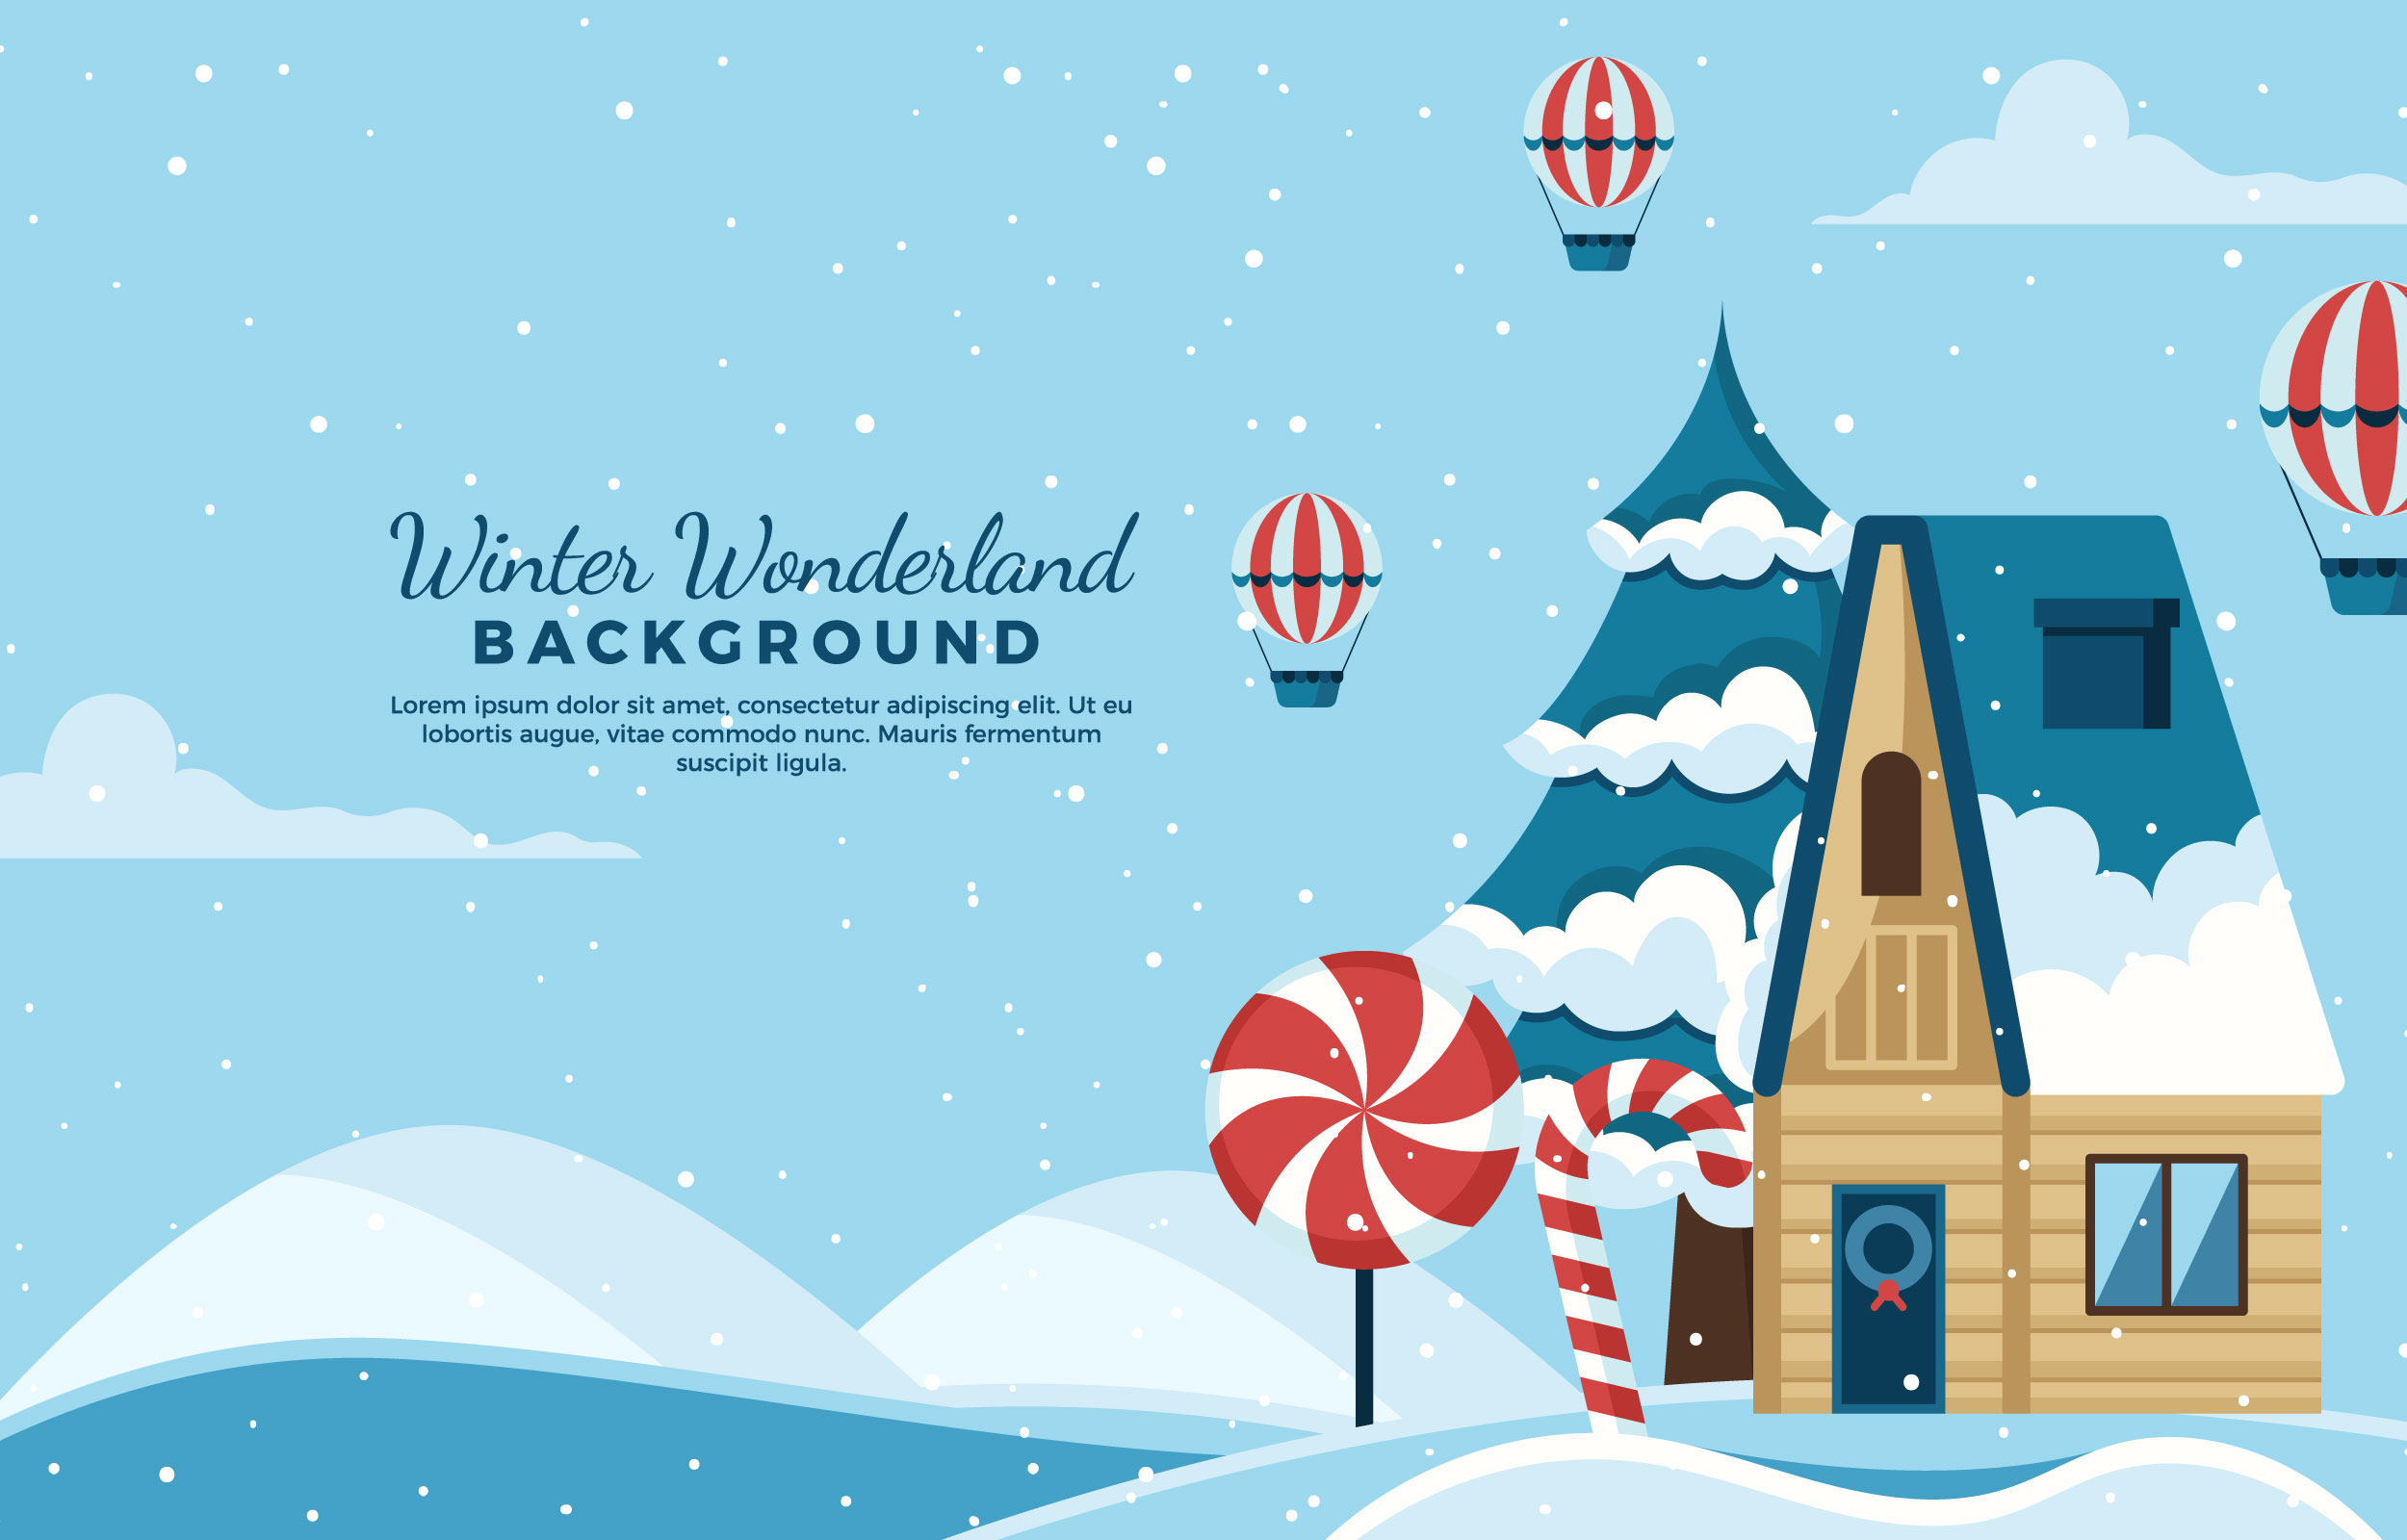 Winter Wonderland Background 3548978 Vector Art at Vecteezy